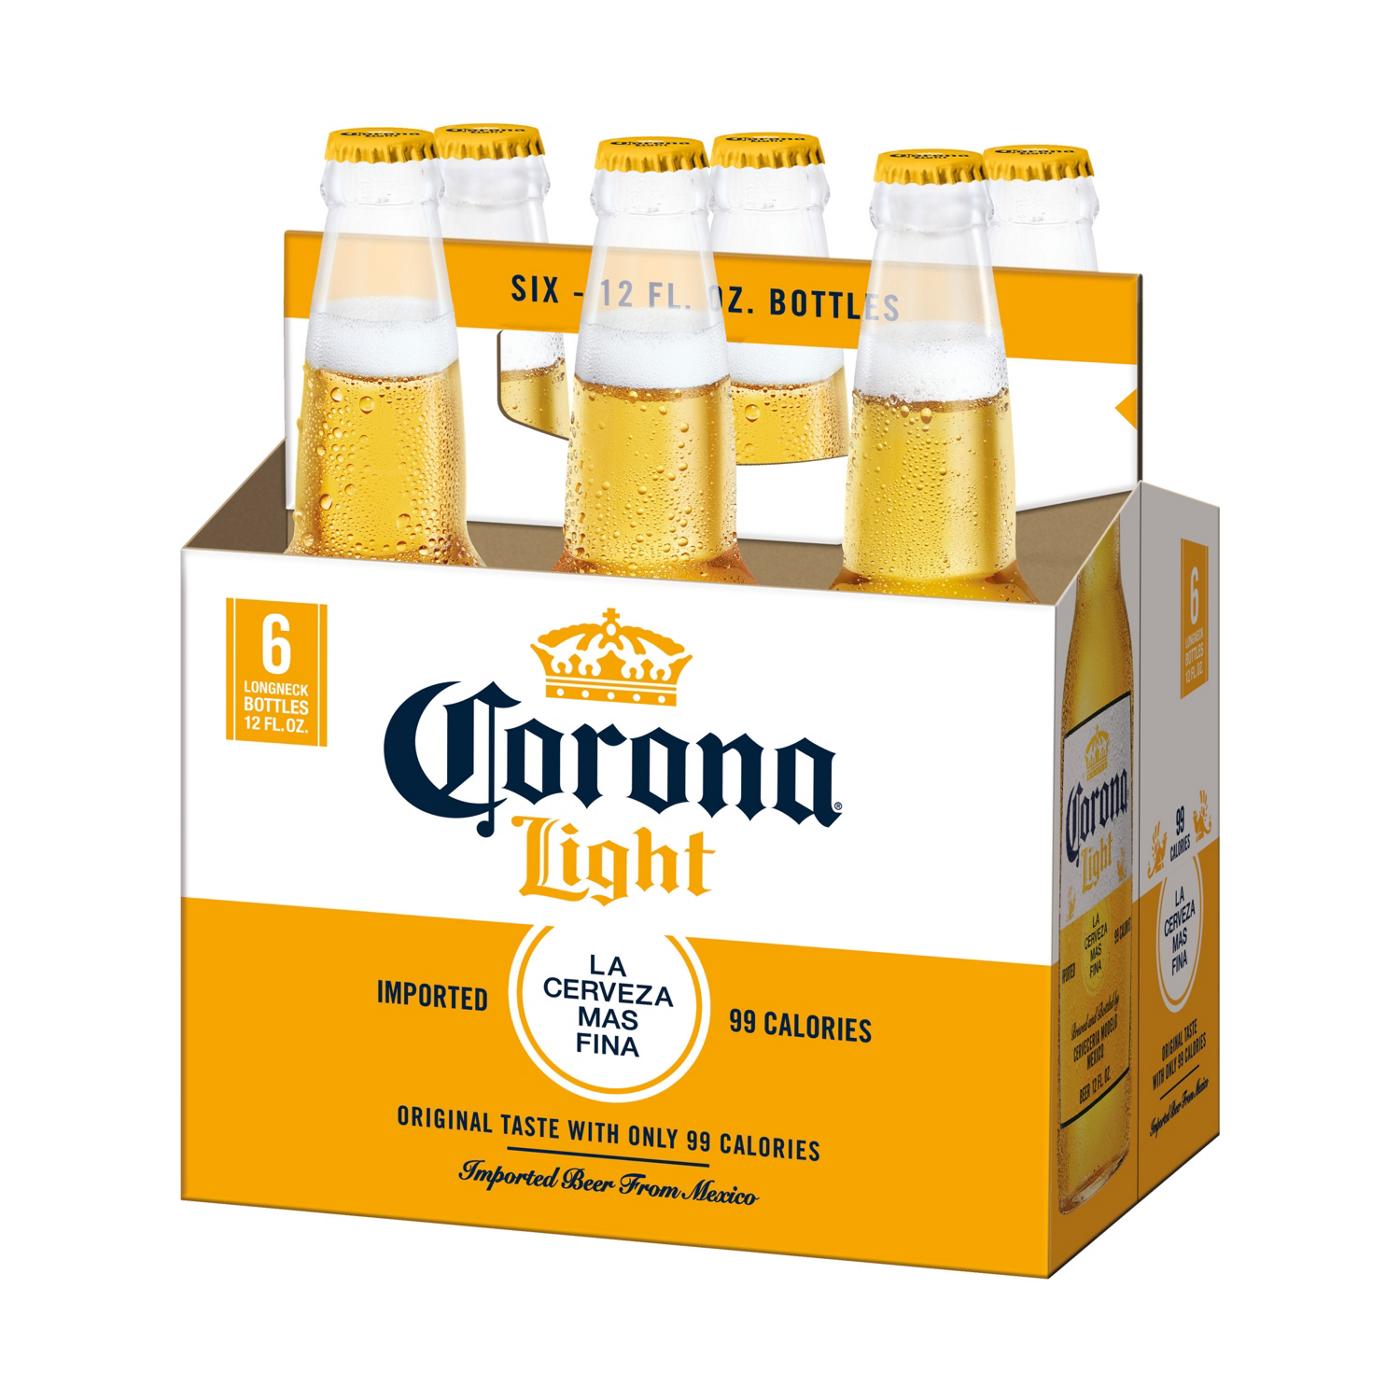 Corona Light Mexican Lager Import Light Beer 12 oz Bottles, 6 pk; image 3 of 10